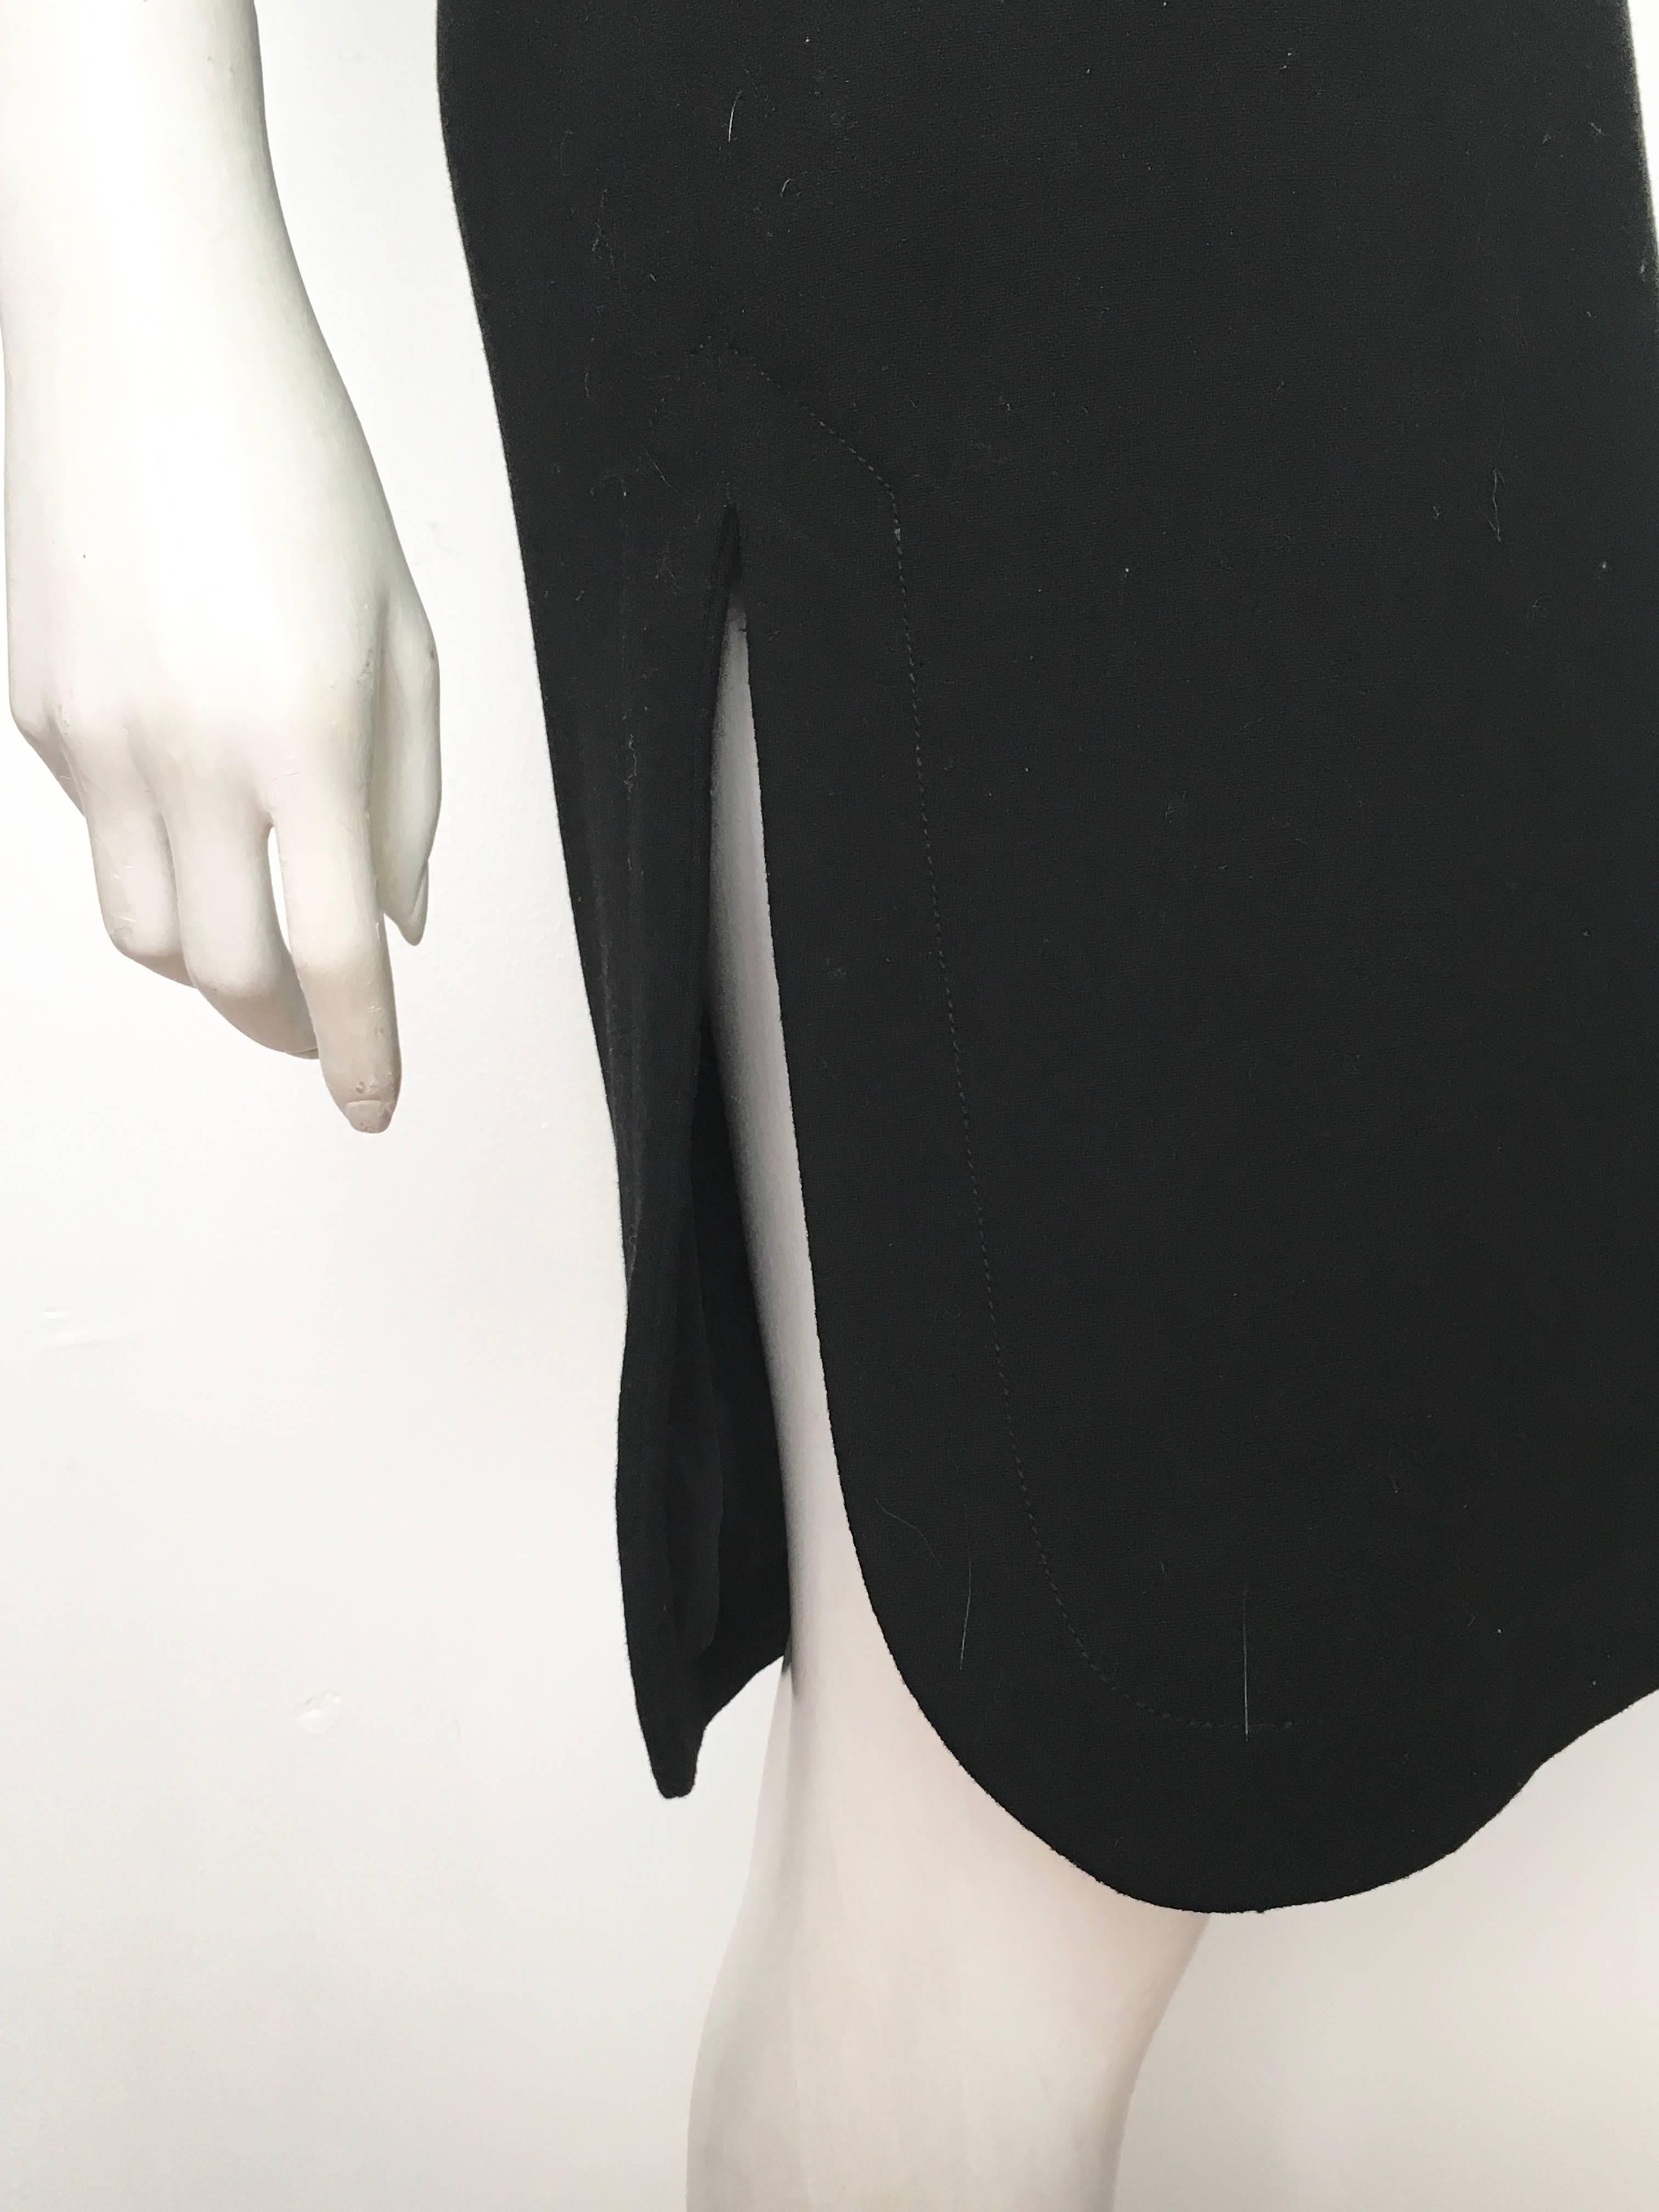 Pierre Cardin for Saks Fifth Avenue 1971 Black Wool Sleeveless Dress Size 6. 2